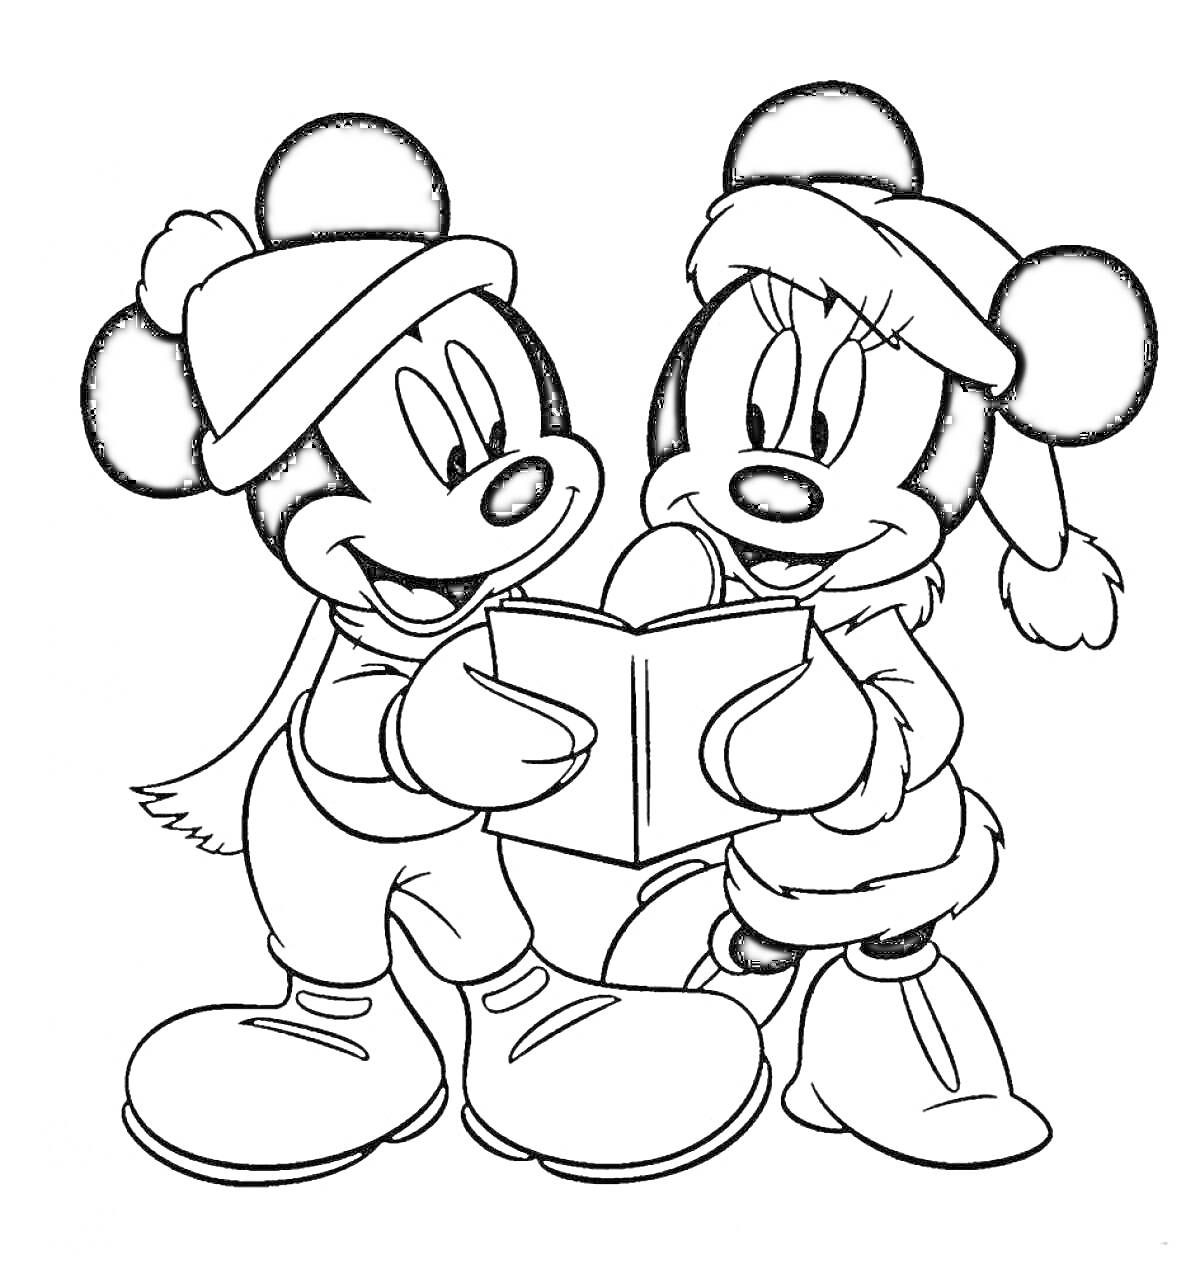 Раскраска Микки Маус и Минни Маус поют рождественские песни в зимней одежде